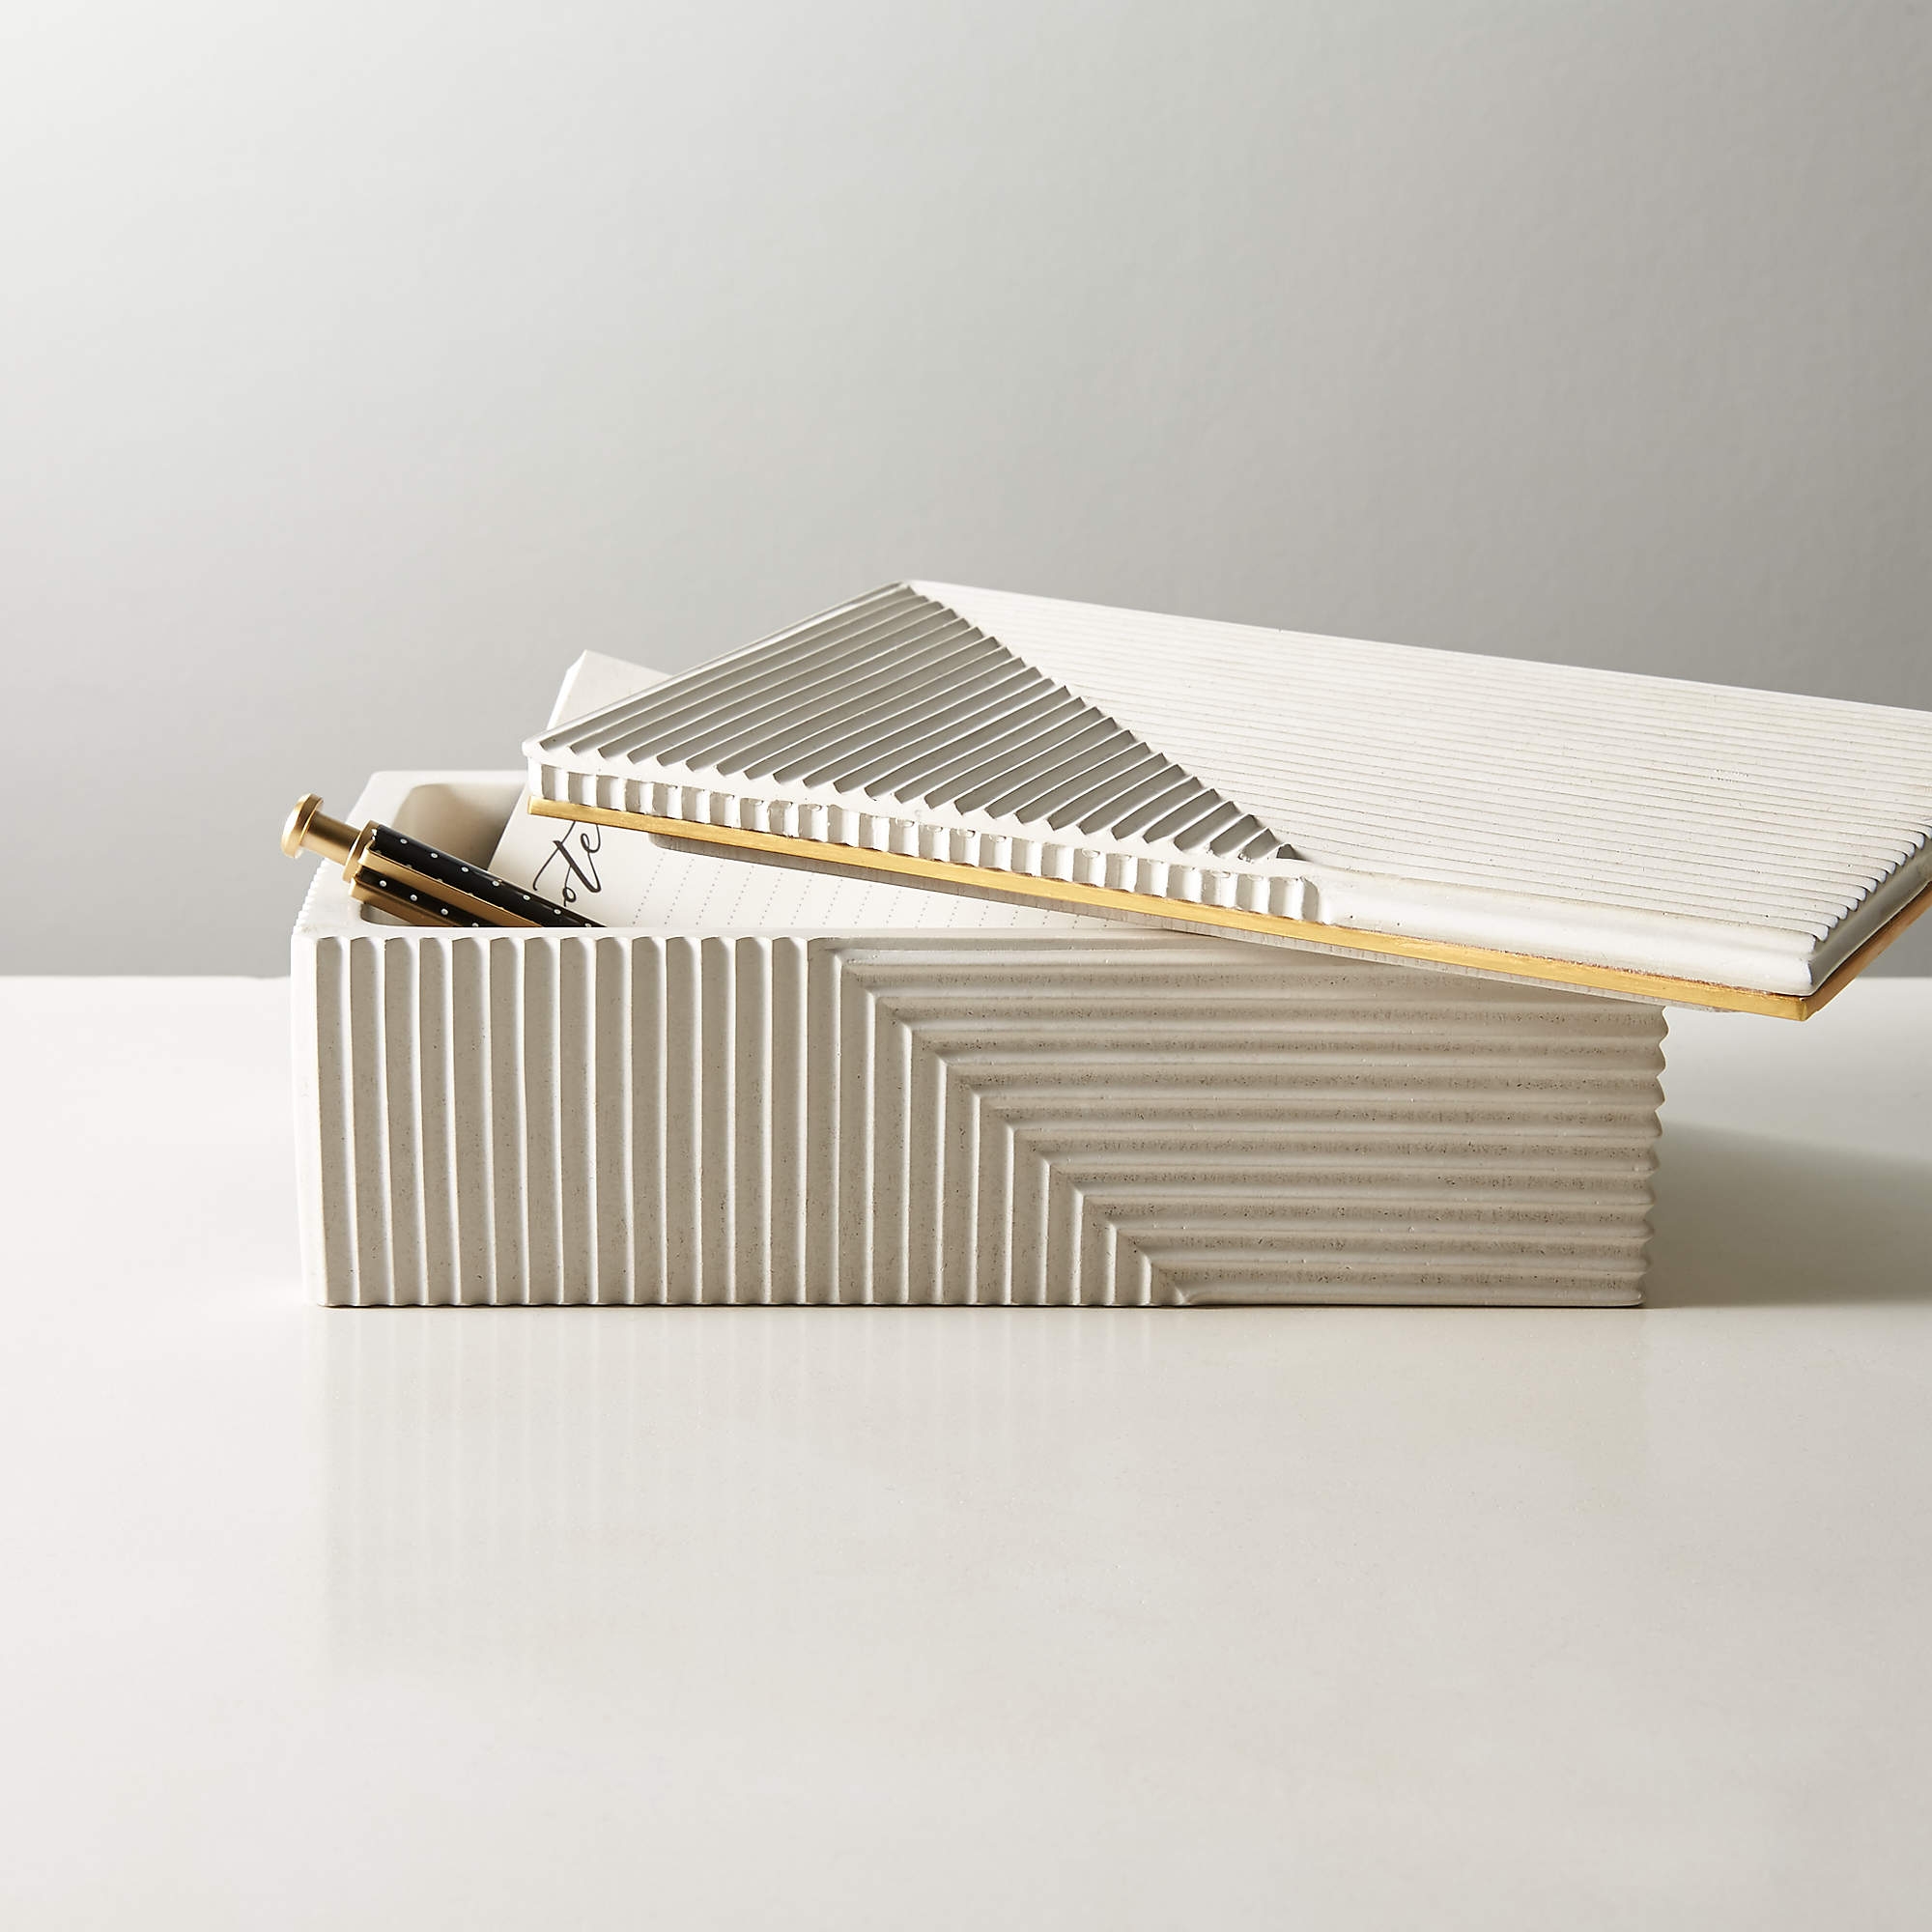 Chelsea Concrete Box, White, Small - Image 1